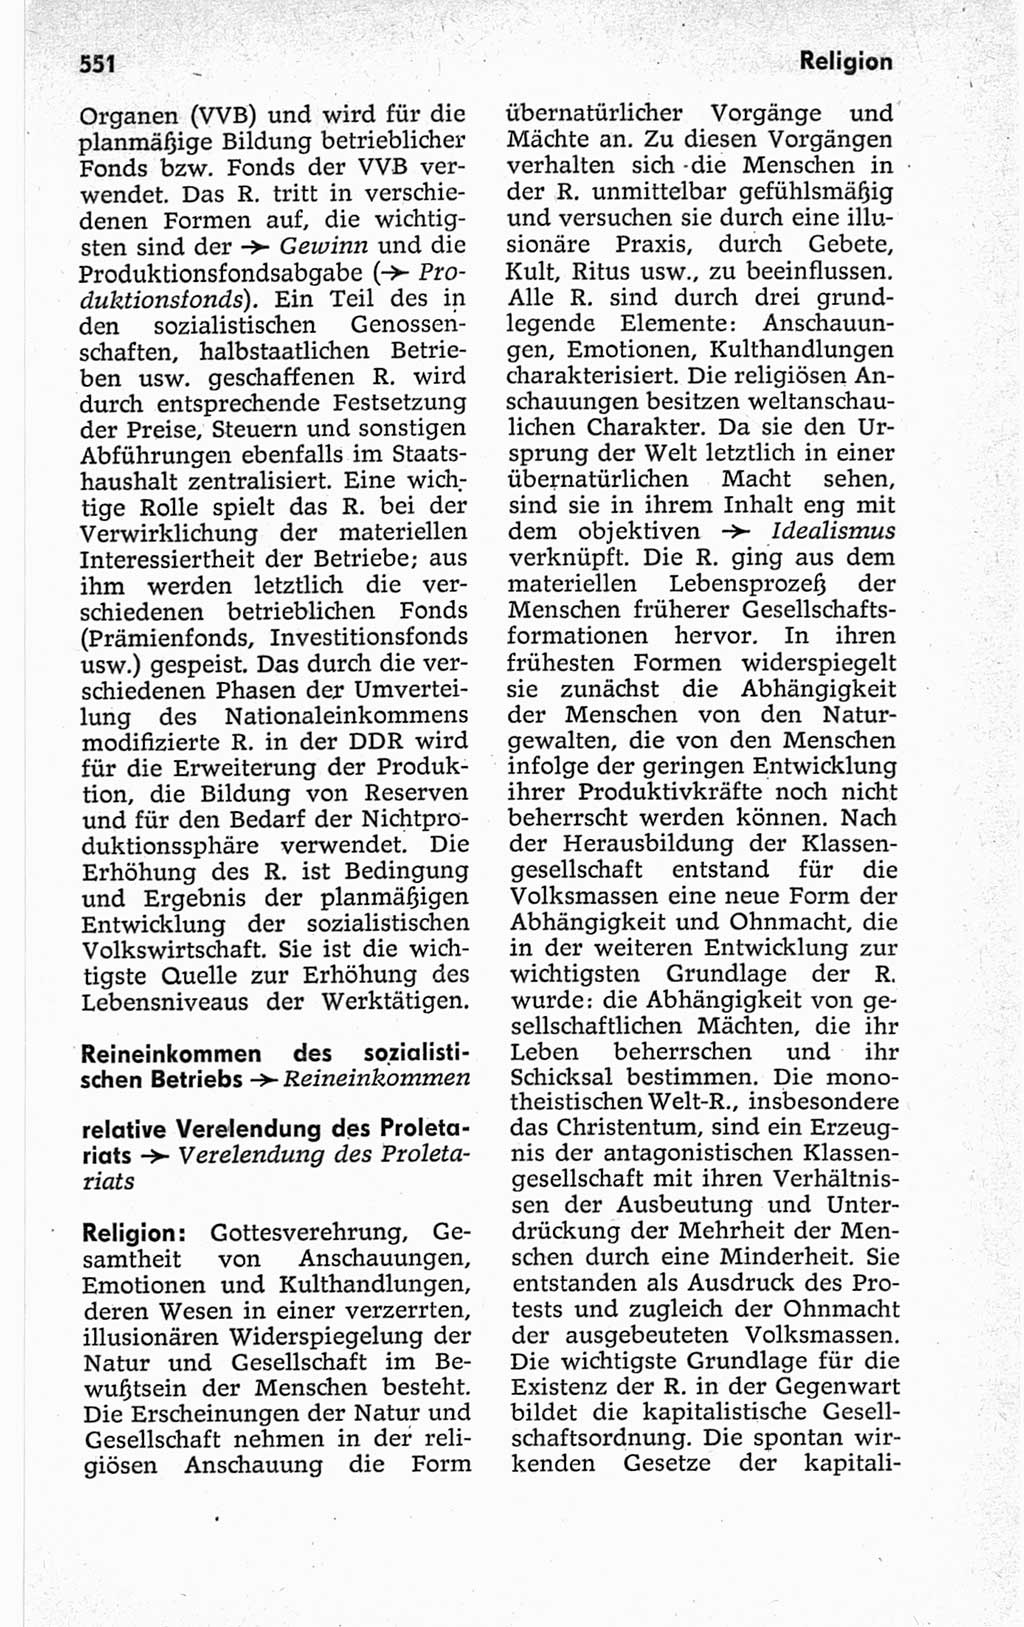 Kleines politisches Wörterbuch [Deutsche Demokratische Republik (DDR)] 1967, Seite 551 (Kl. pol. Wb. DDR 1967, S. 551)